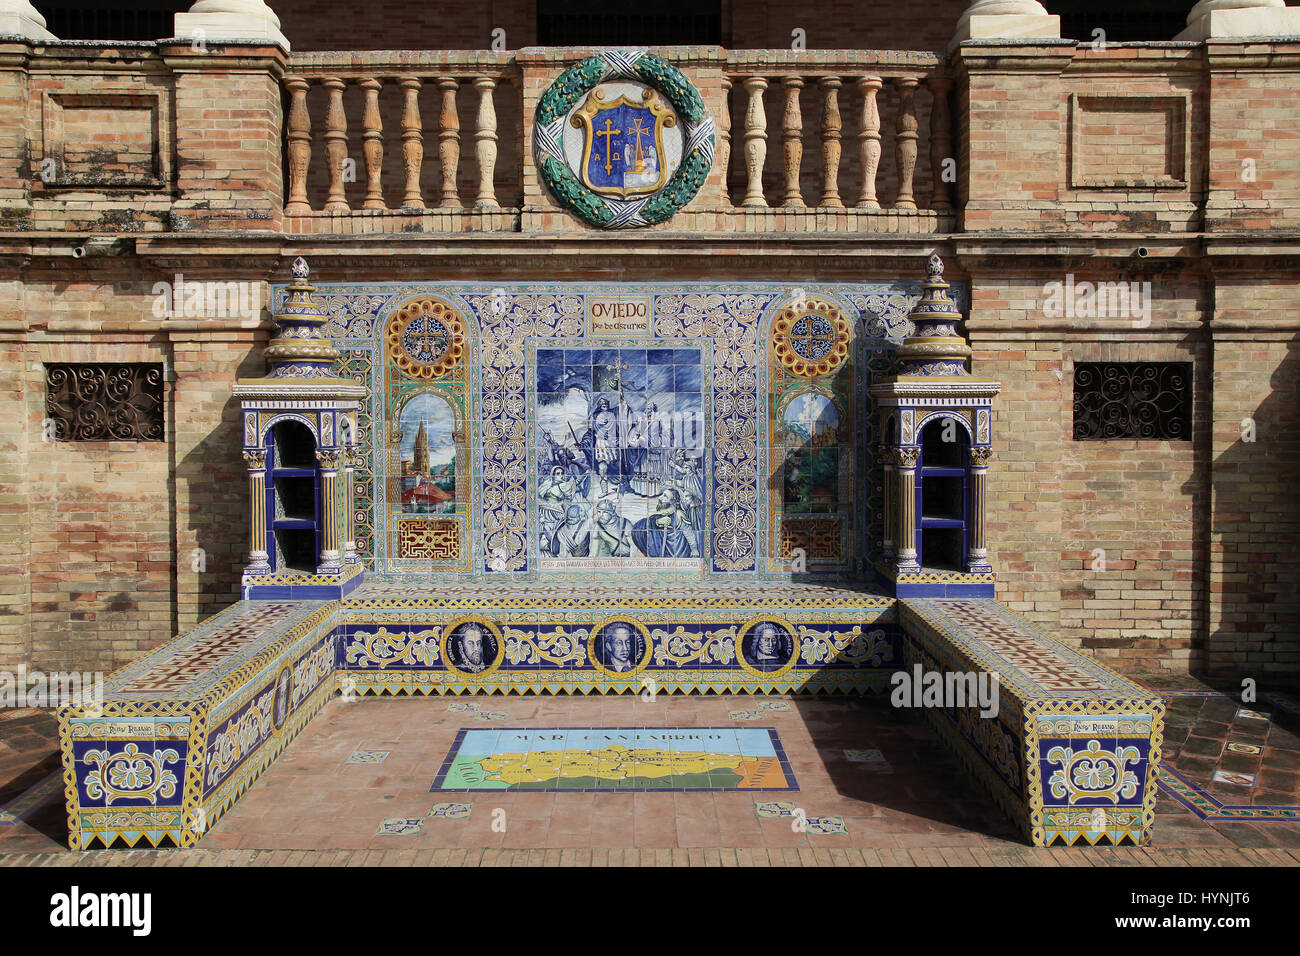 Keramische Azulejos gefliest provincial Bank oder Alkoven von Oviedo auf der Plaza de España in Parque de Maria Luisa Sevilla Sevilla Spanien Stockfoto